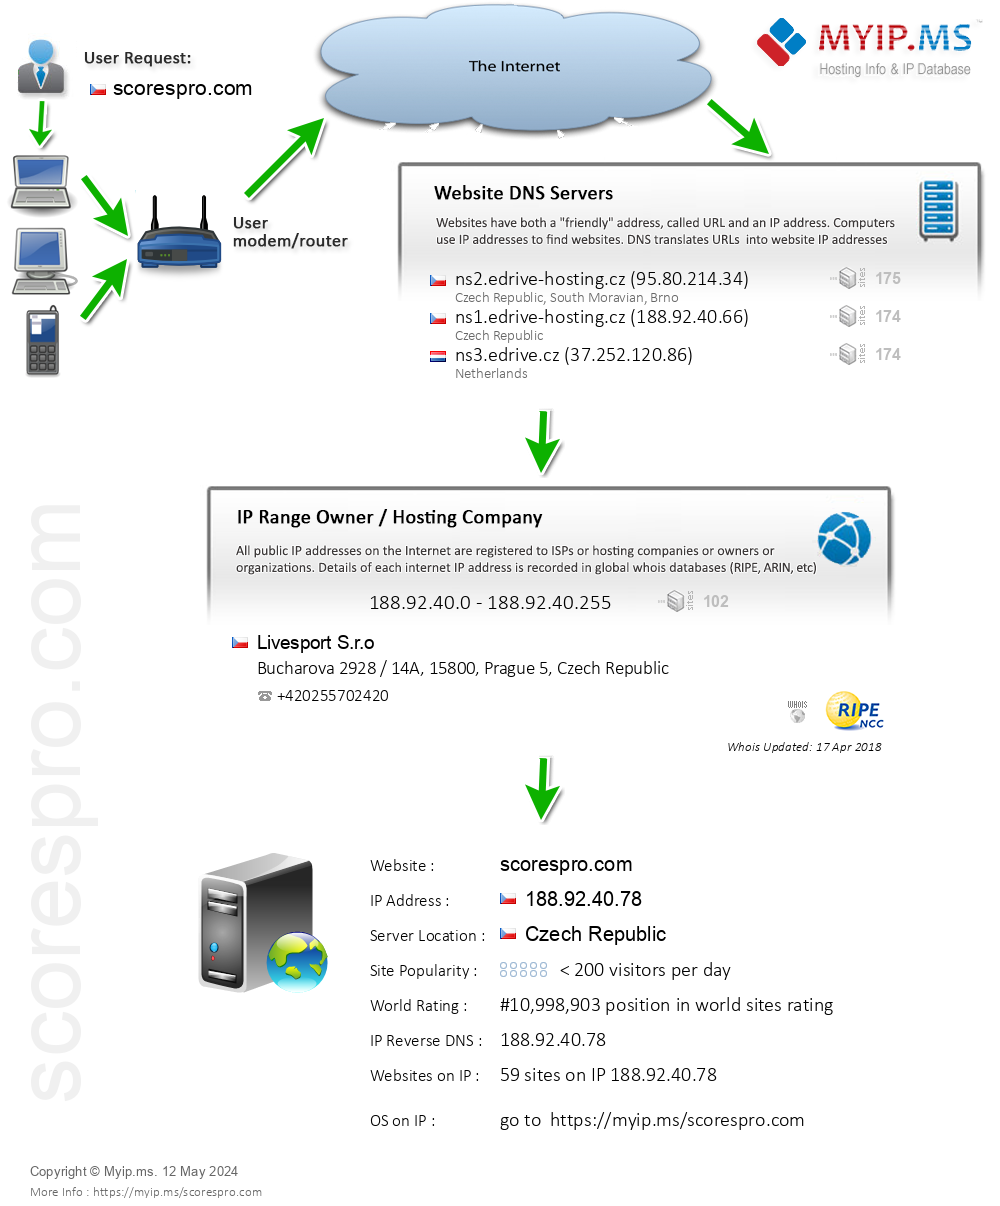 Scorespro.com - Website Hosting Visual IP Diagram